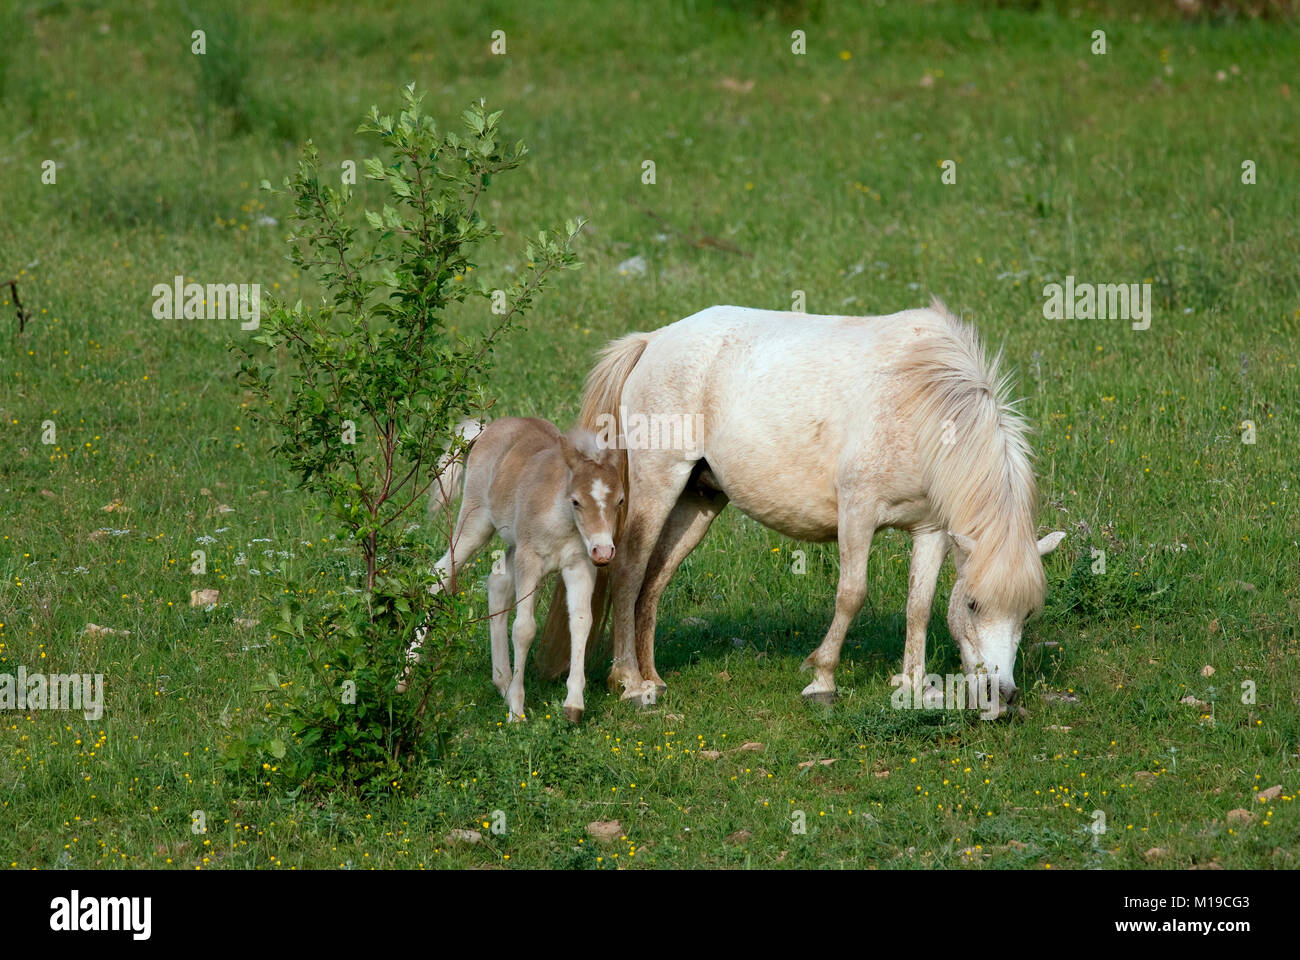 Horse with foal (Equus caballus), Umbria, Italy Stock Photo